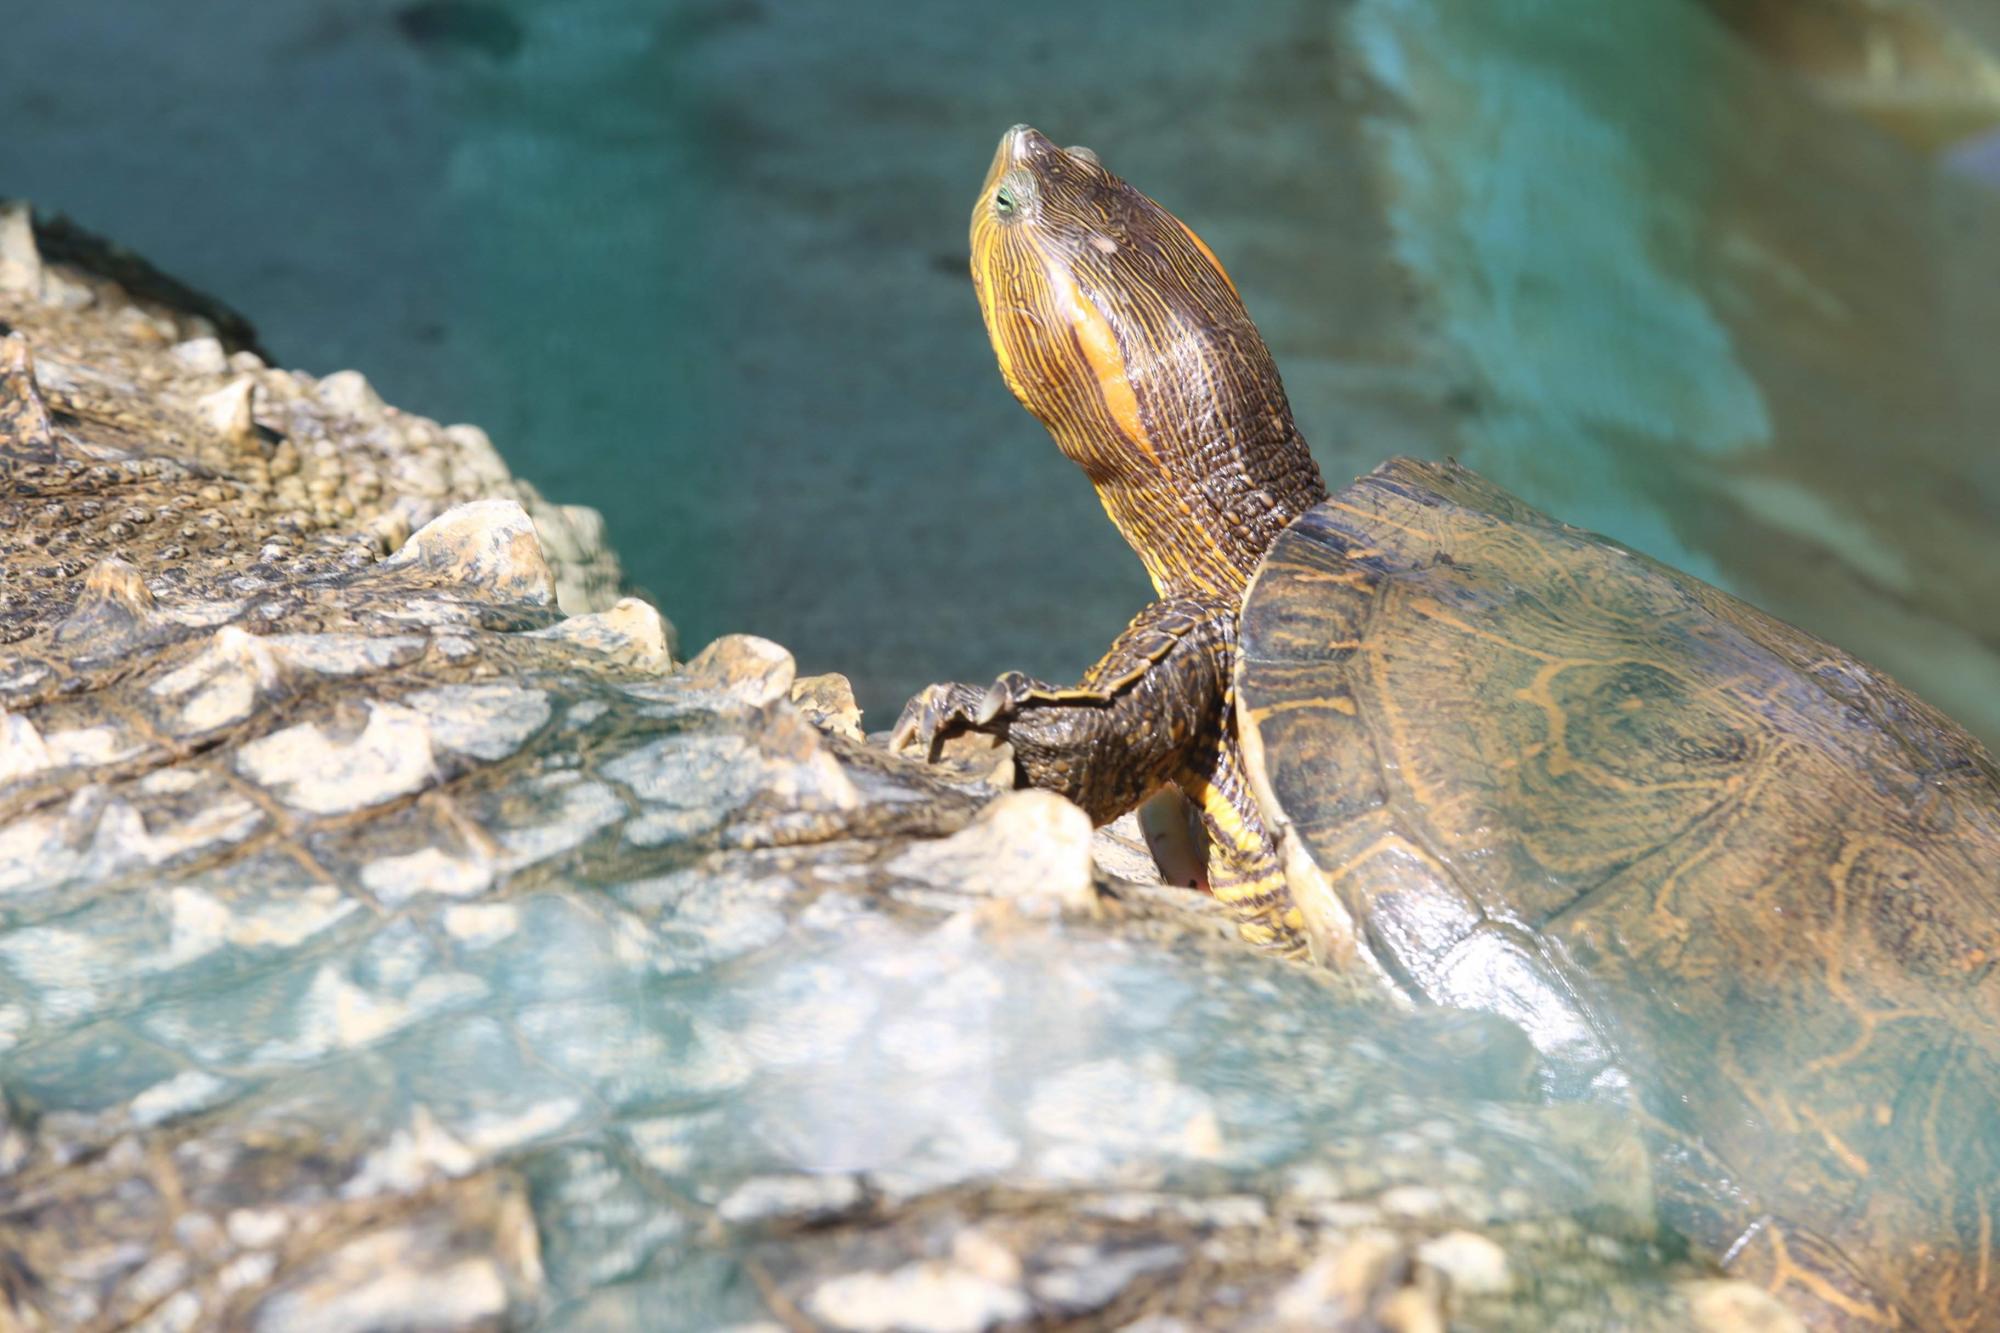 El cierre del acuario significa la desaparición de programas de conservación como el de la tortuga marina, que en 32 años de funcionamiento logró rescatar más de 1.7 millones de huevos y liberar más de 1.3 millones de crías de tortuga, principalmente golfina. La protección de estas tortugas, que anidan en las playas de Mazatlán de junio a noviembre, es crucial para su supervivencia, ya que se encuentran en peligro de extinción.